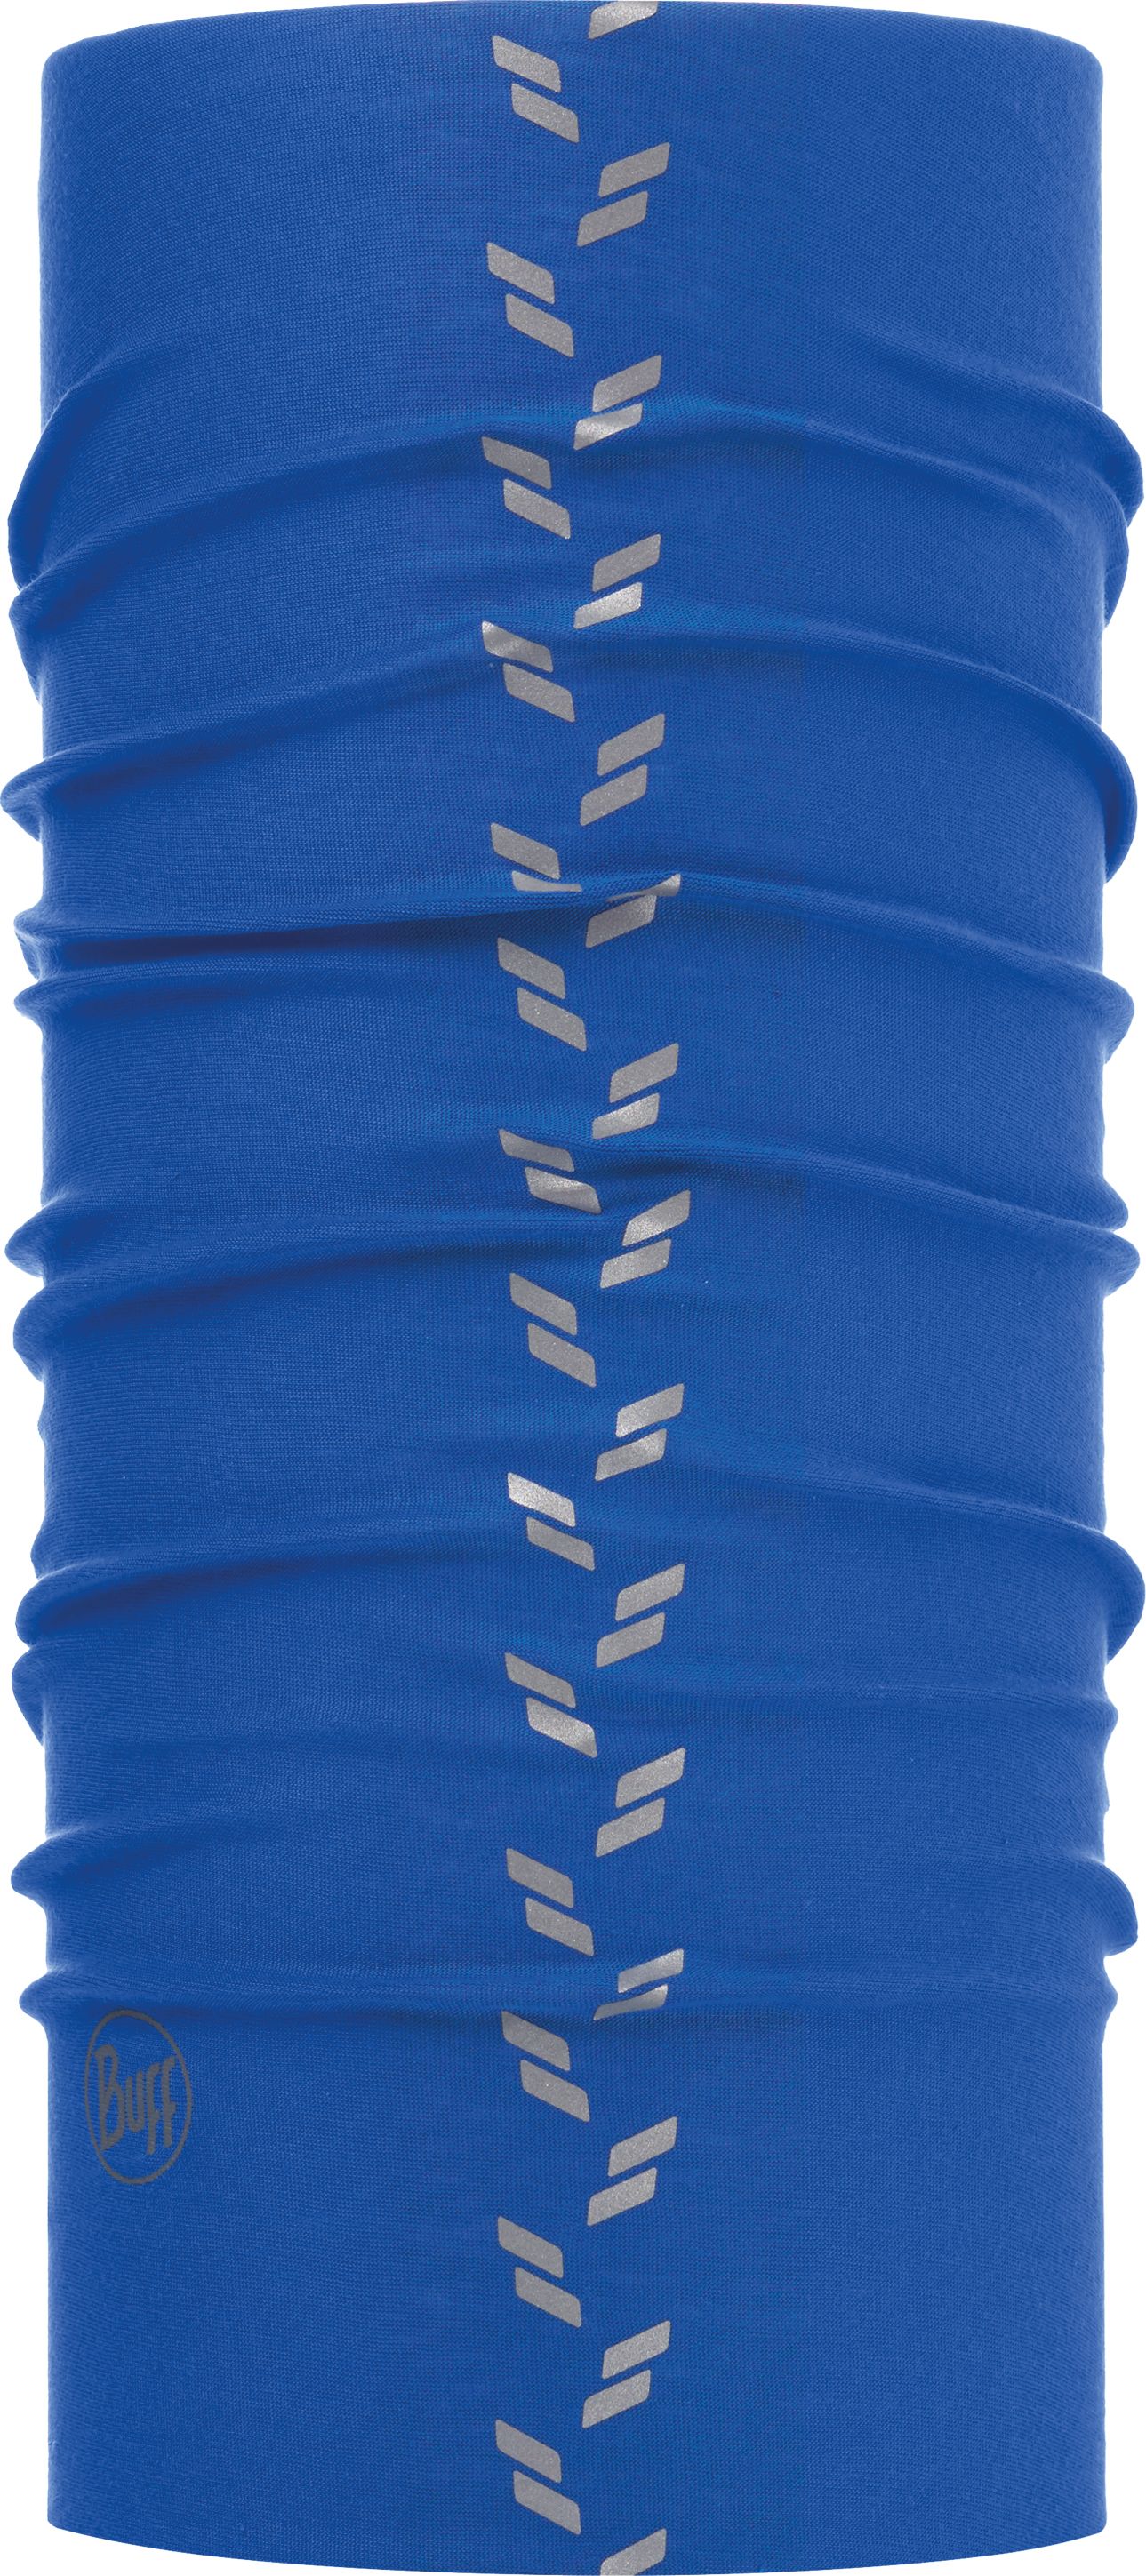 Бандана Buff Reflective R-Solid Cape Blue, цвет: синий. 113111.715.10.00. Размер универсальный